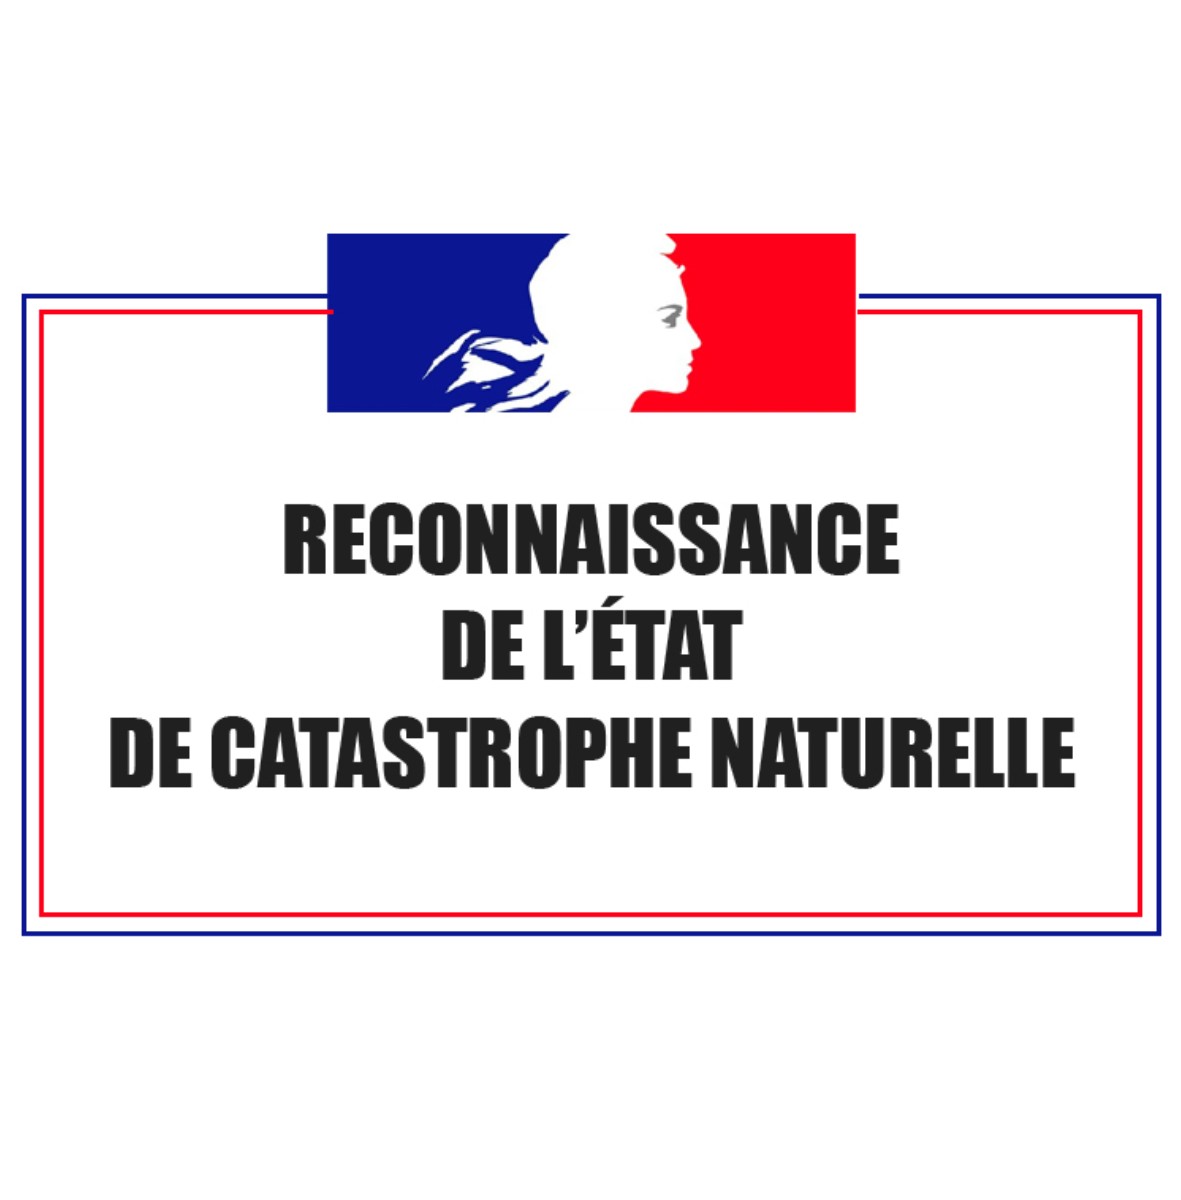 Reconnaissance-catastrophe-naturelle